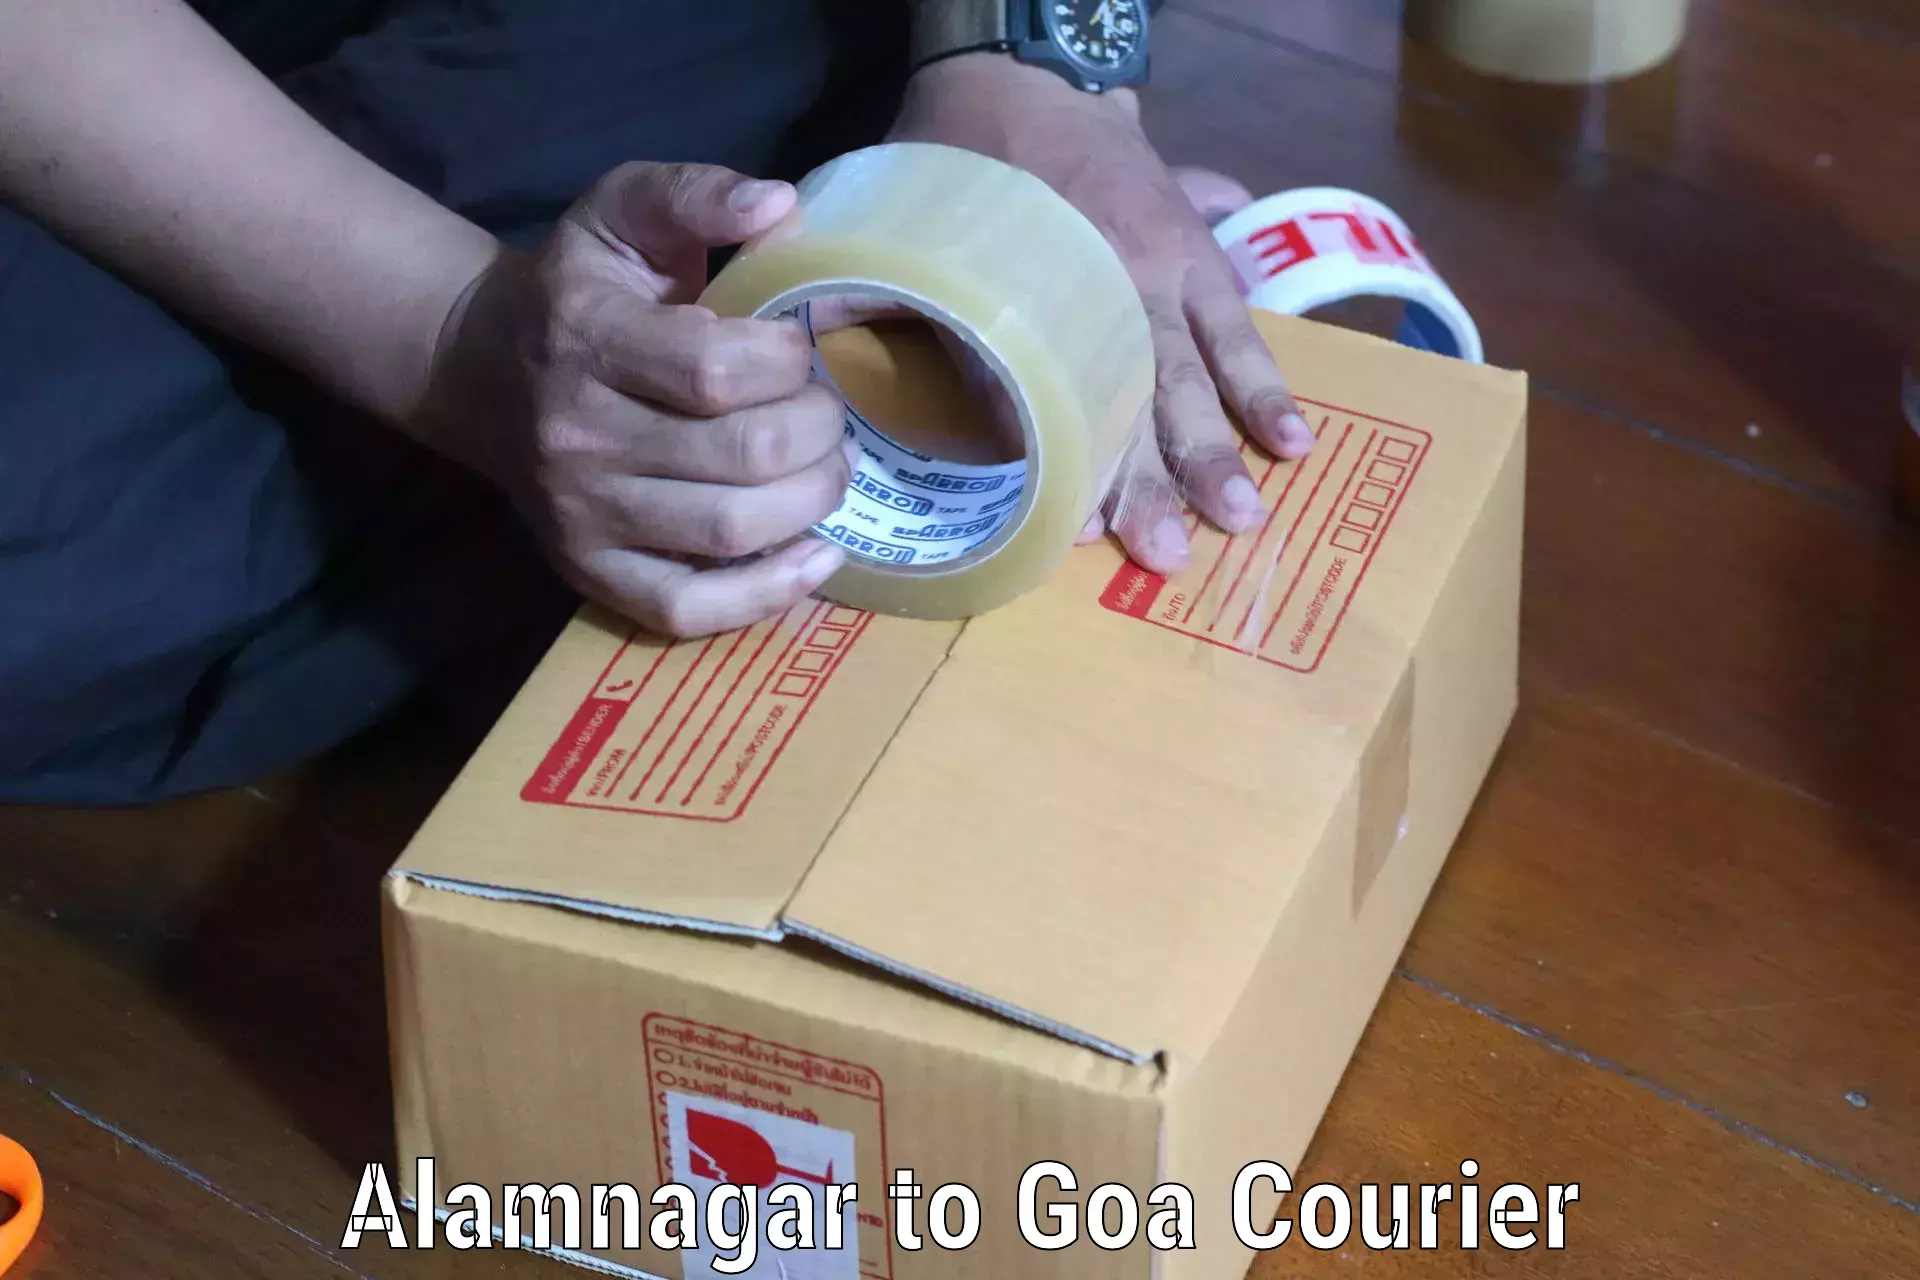 Digital courier platforms Alamnagar to South Goa